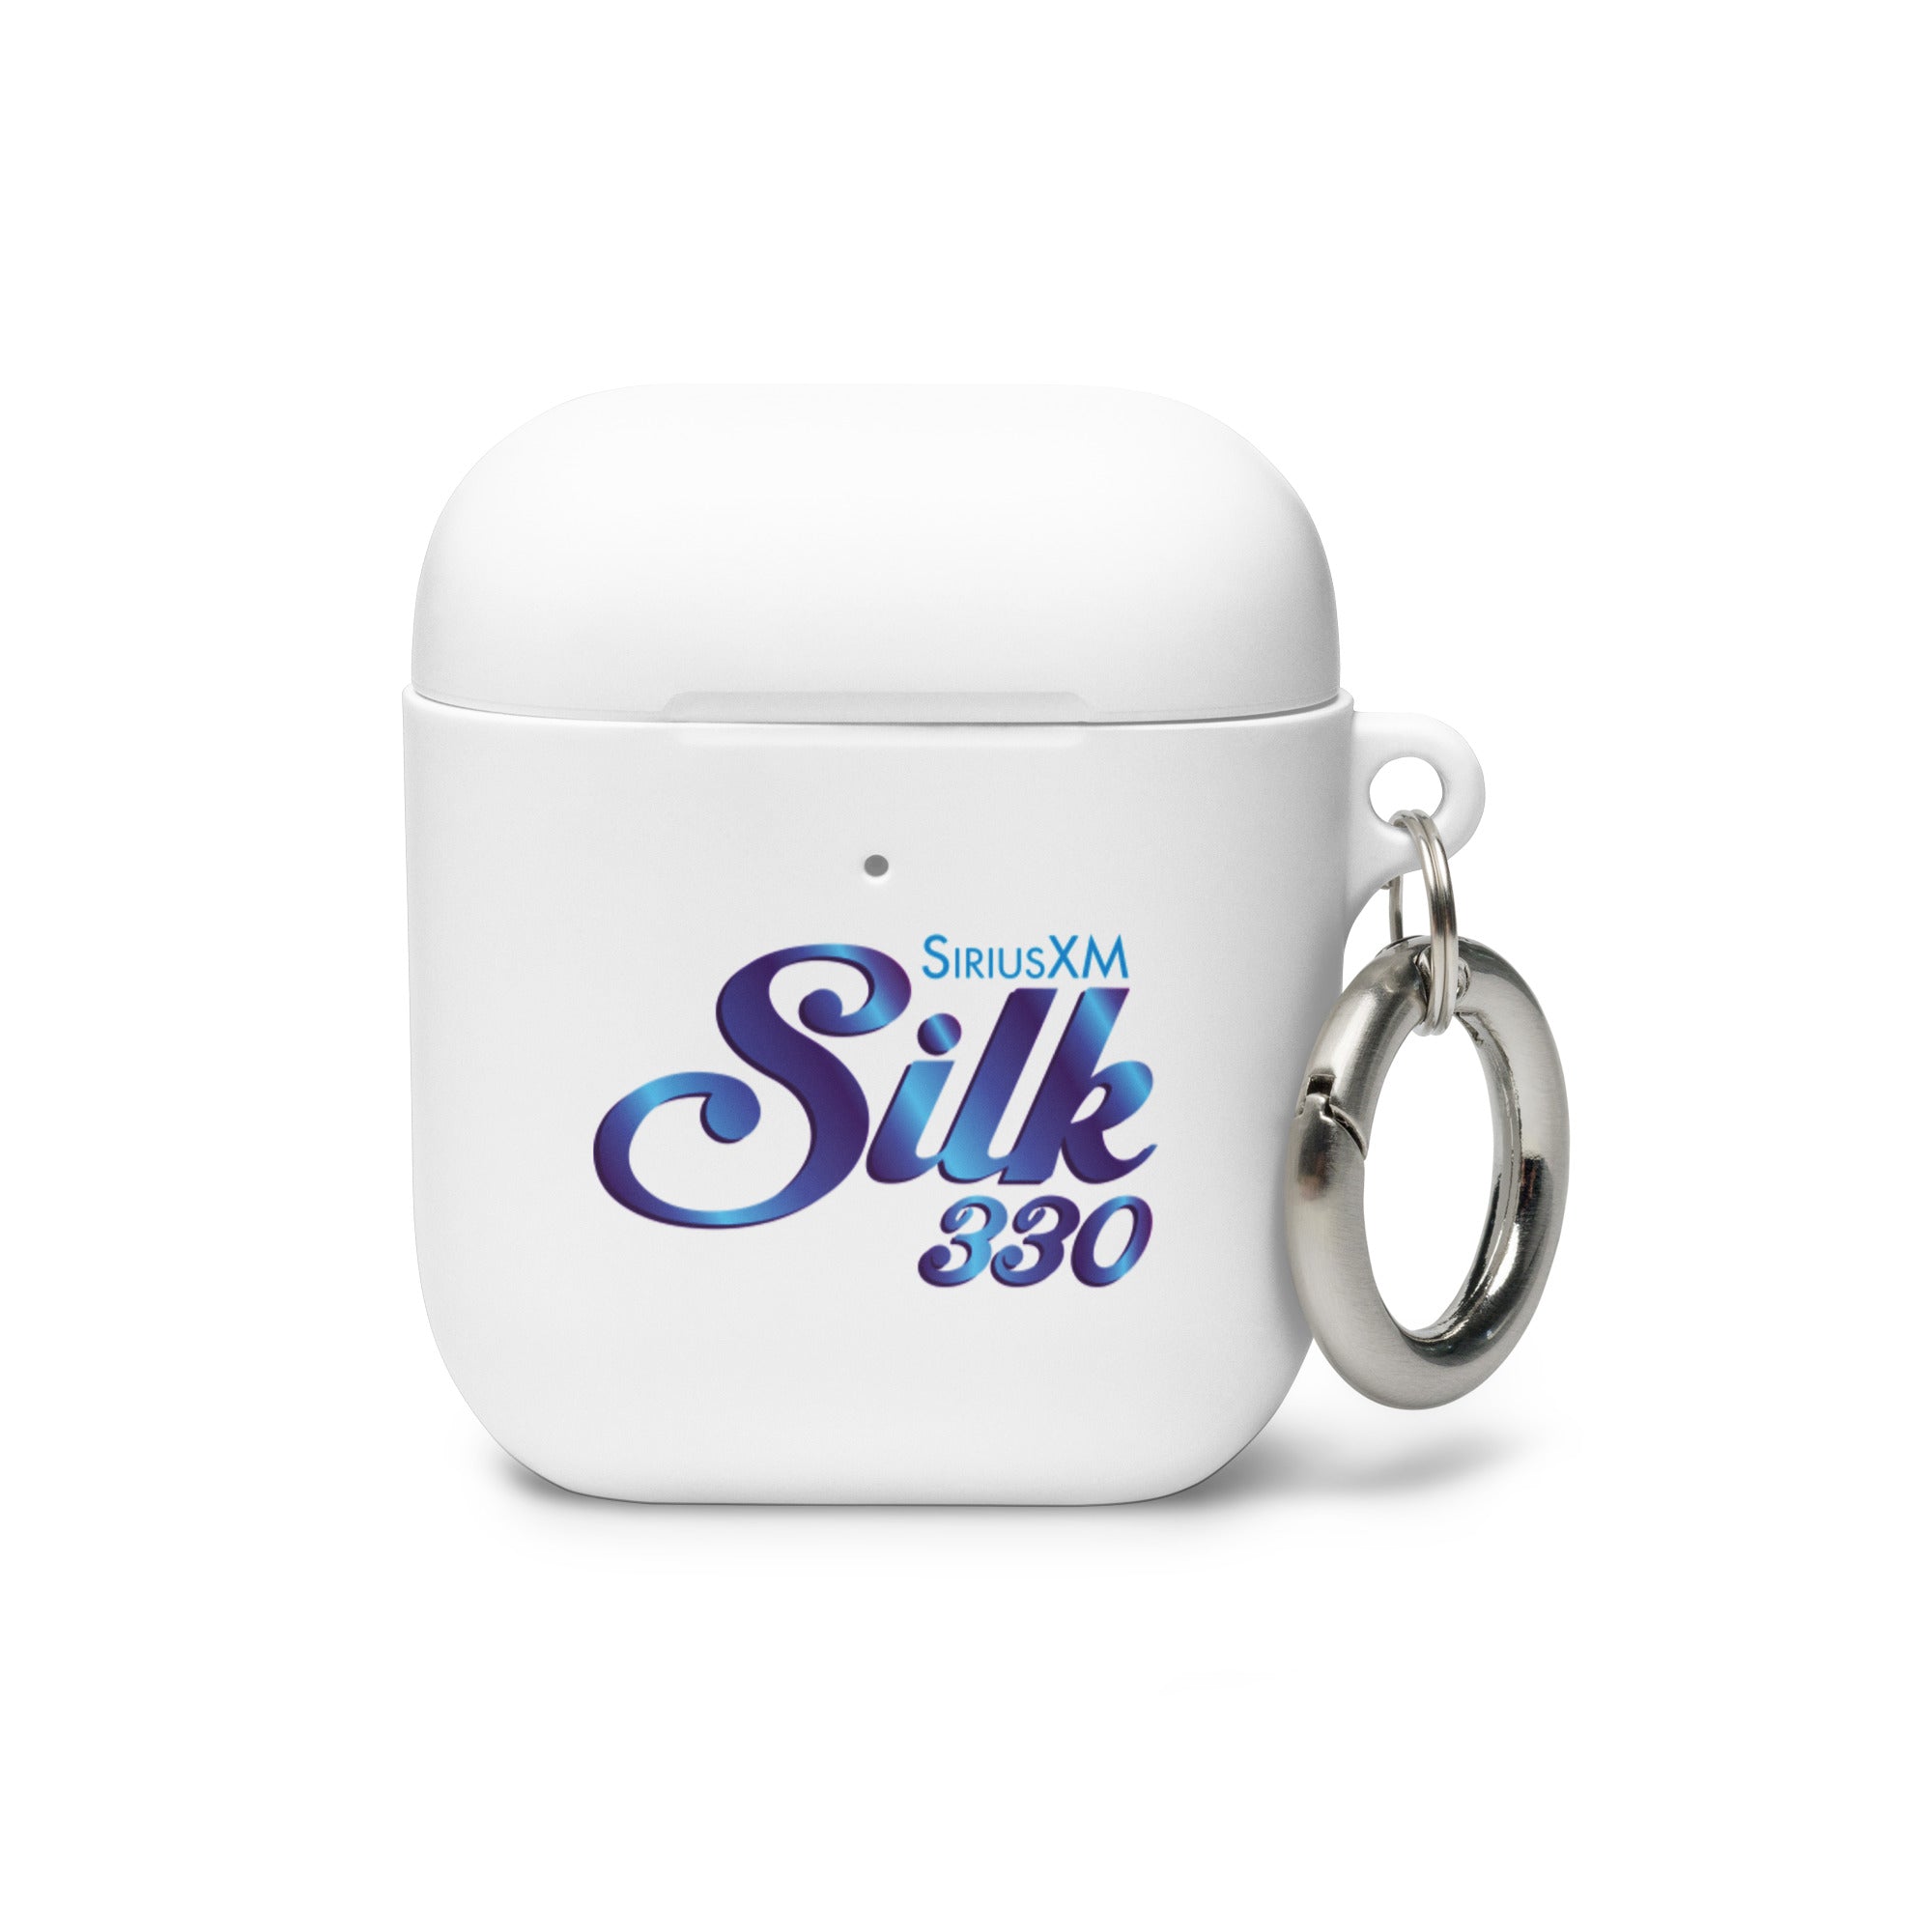 SiriusXM Silk: AirPods® Case Cover